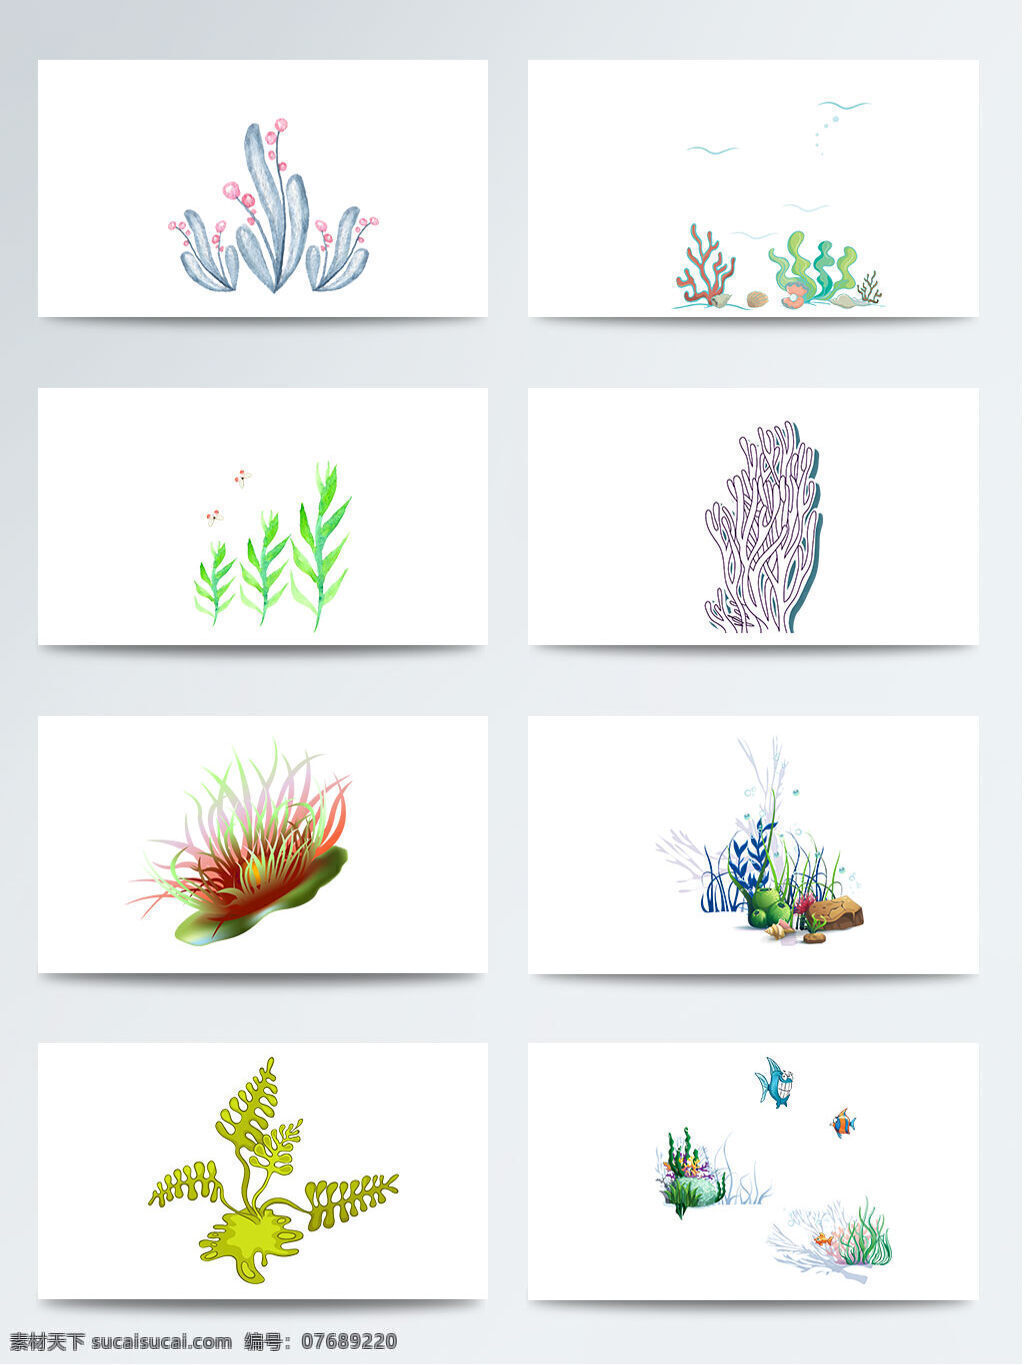 png元素 多种颜色 海底水草 卡通 飘动的水草 手绘 手绘叶片 水草叶子 植物 海底 水草 叶子 元素